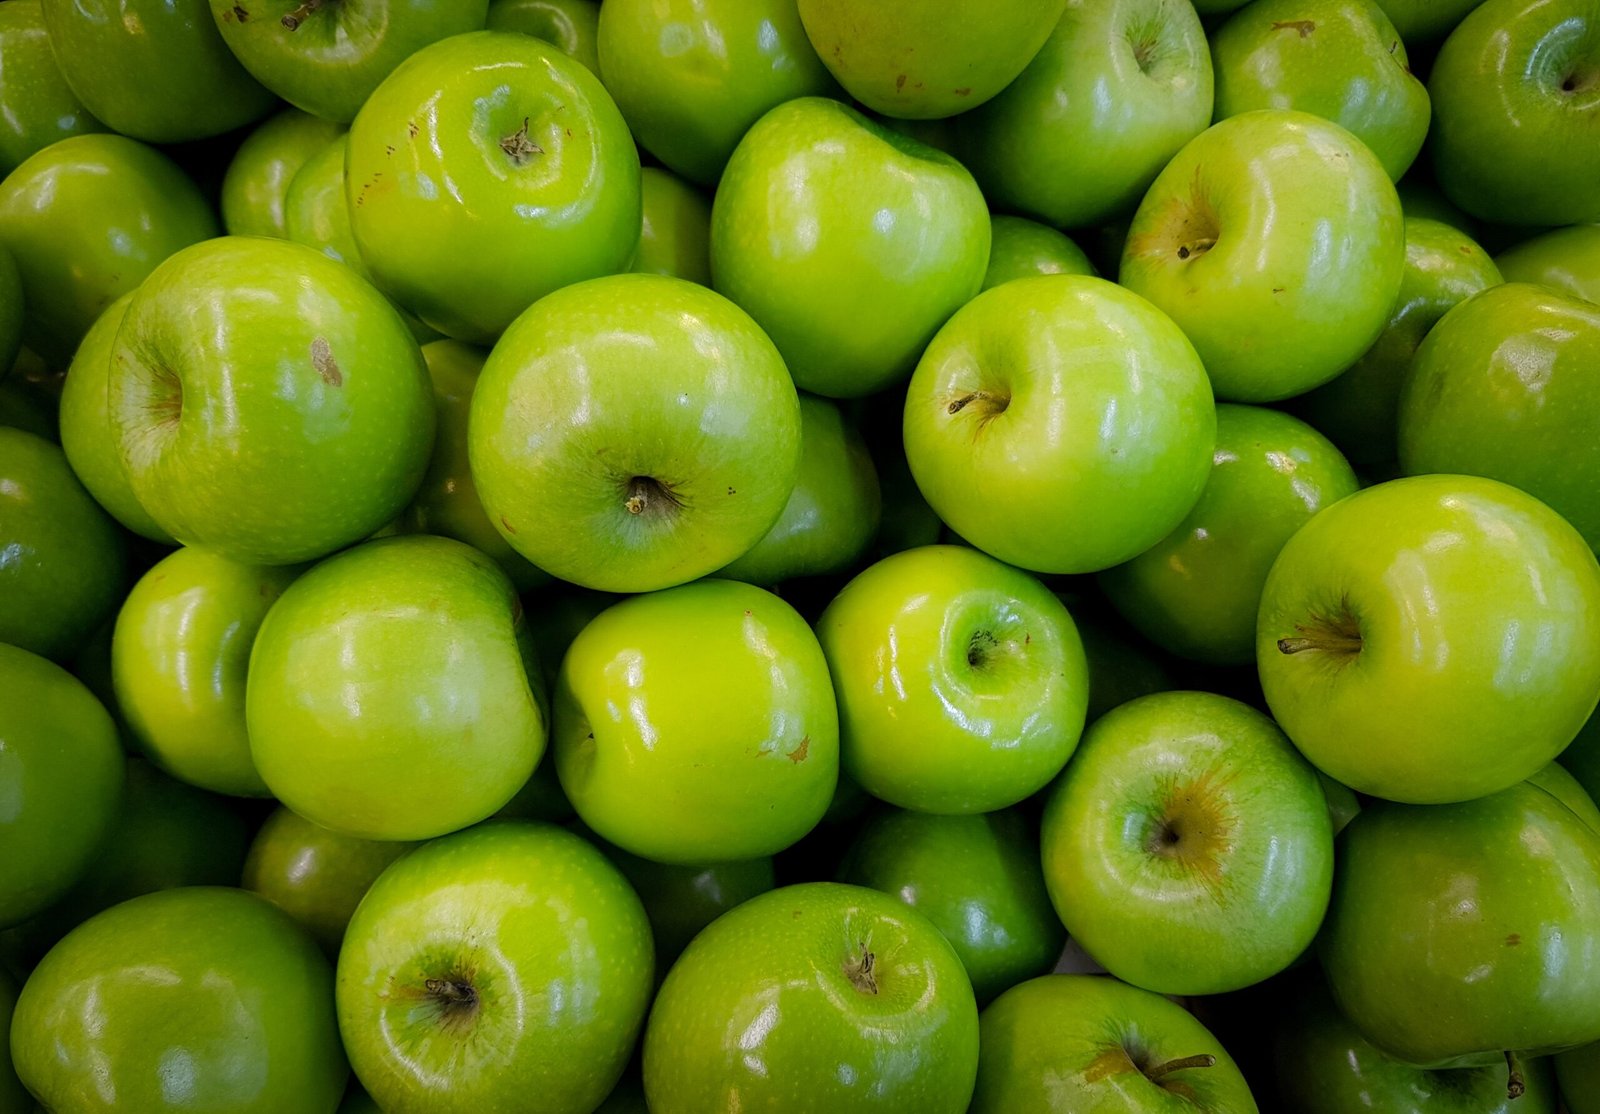 Descubra as 7 melhores frutas para diabéticos tipo 2 que ajudam no controle de açúcar no sangue. Incluindo pêssegos, maçãs, morangos e mais.